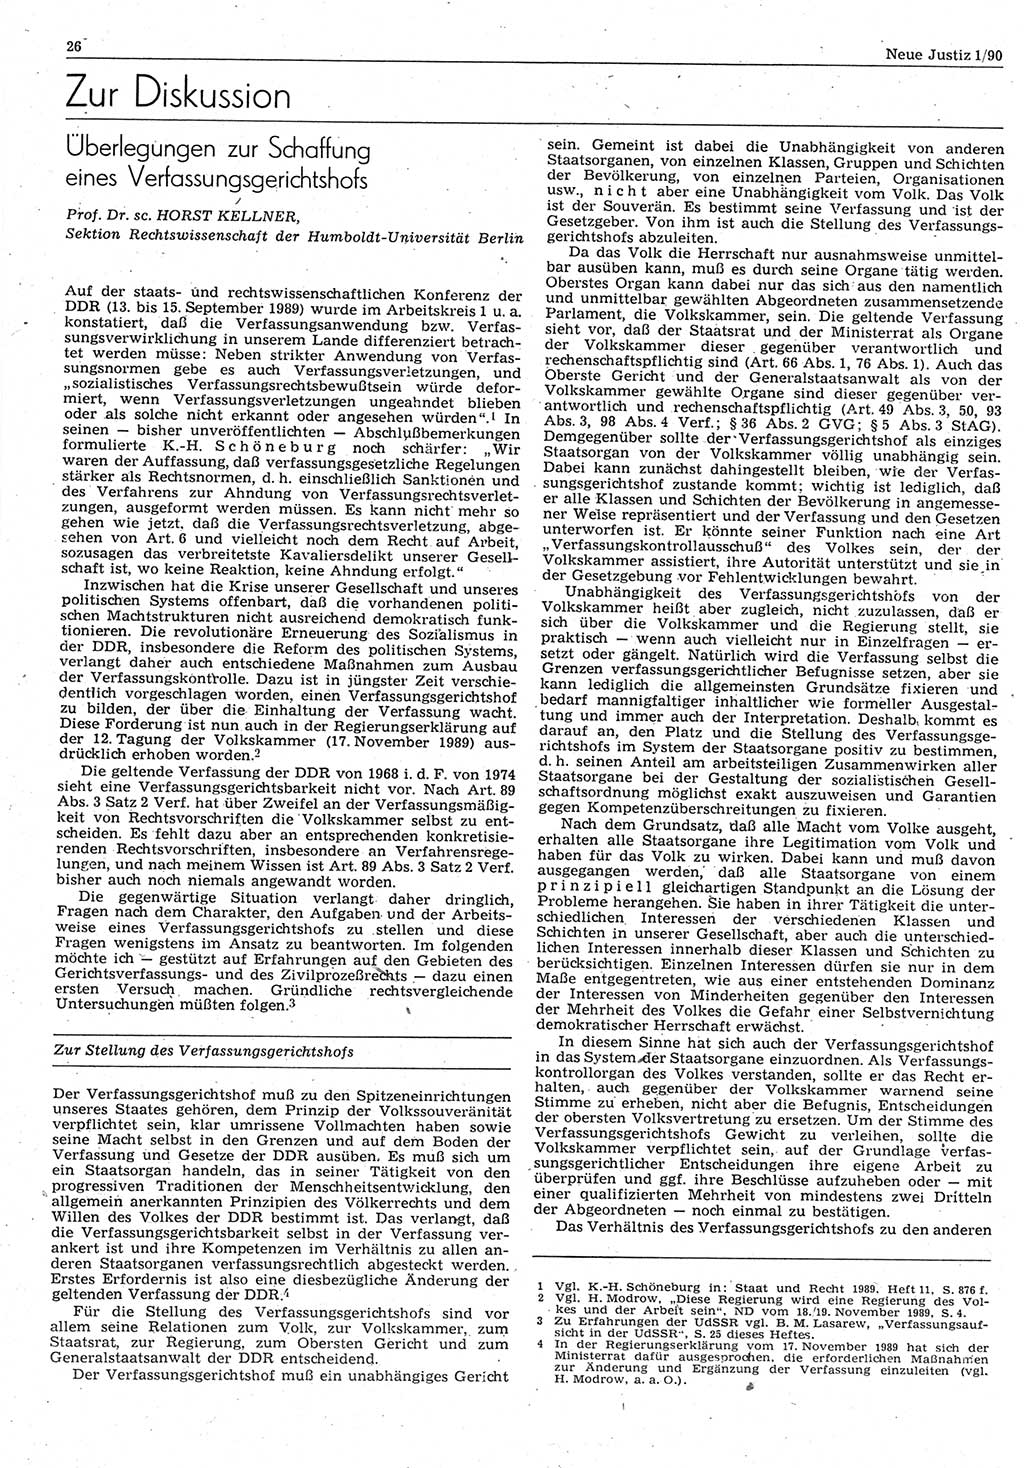 Neue Justiz (NJ), Zeitschrift für Rechtsetzung und Rechtsanwendung [Deutsche Demokratische Republik (DDR)], 44. Jahrgang 1990, Seite 26 (NJ DDR 1990, S. 26)